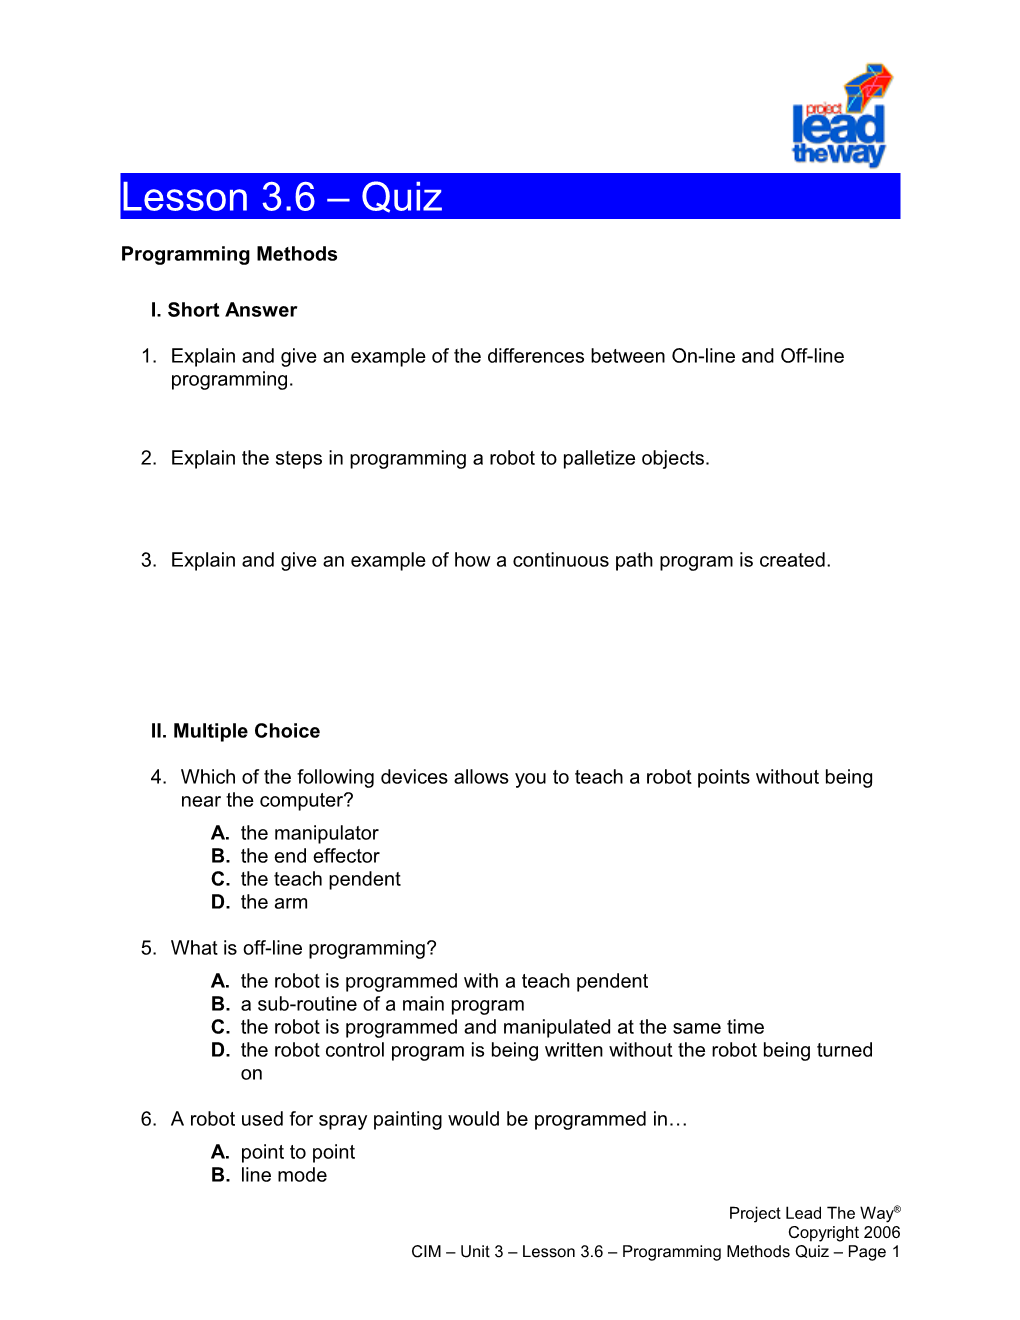 Lesson 3.6 - Programming Methods Quiz